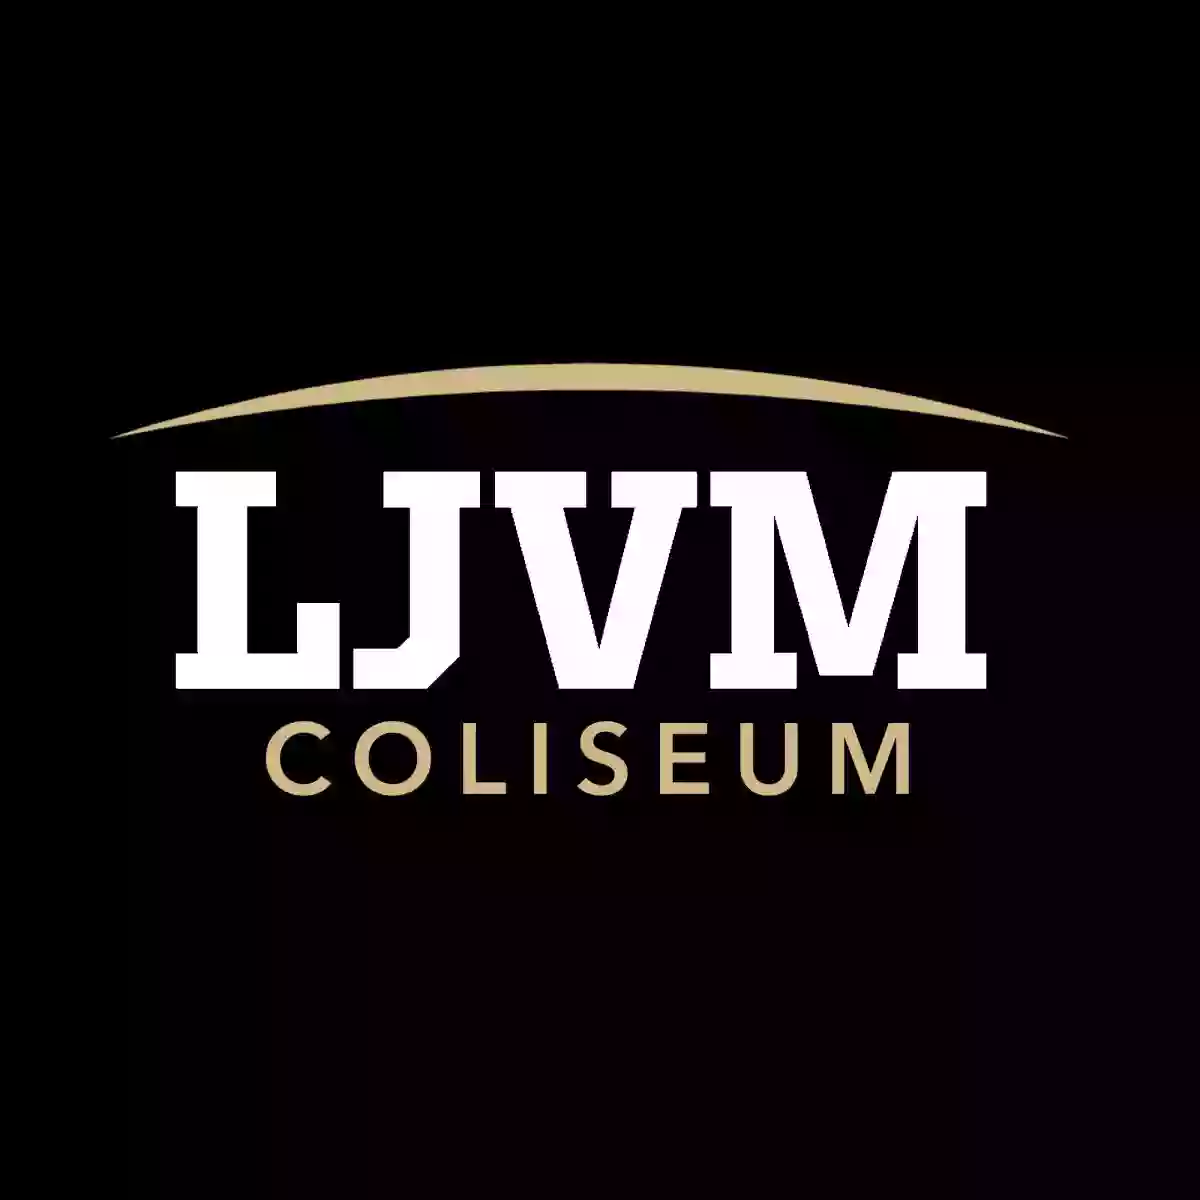 Lawrence Joel Veterans Memorial Coliseum